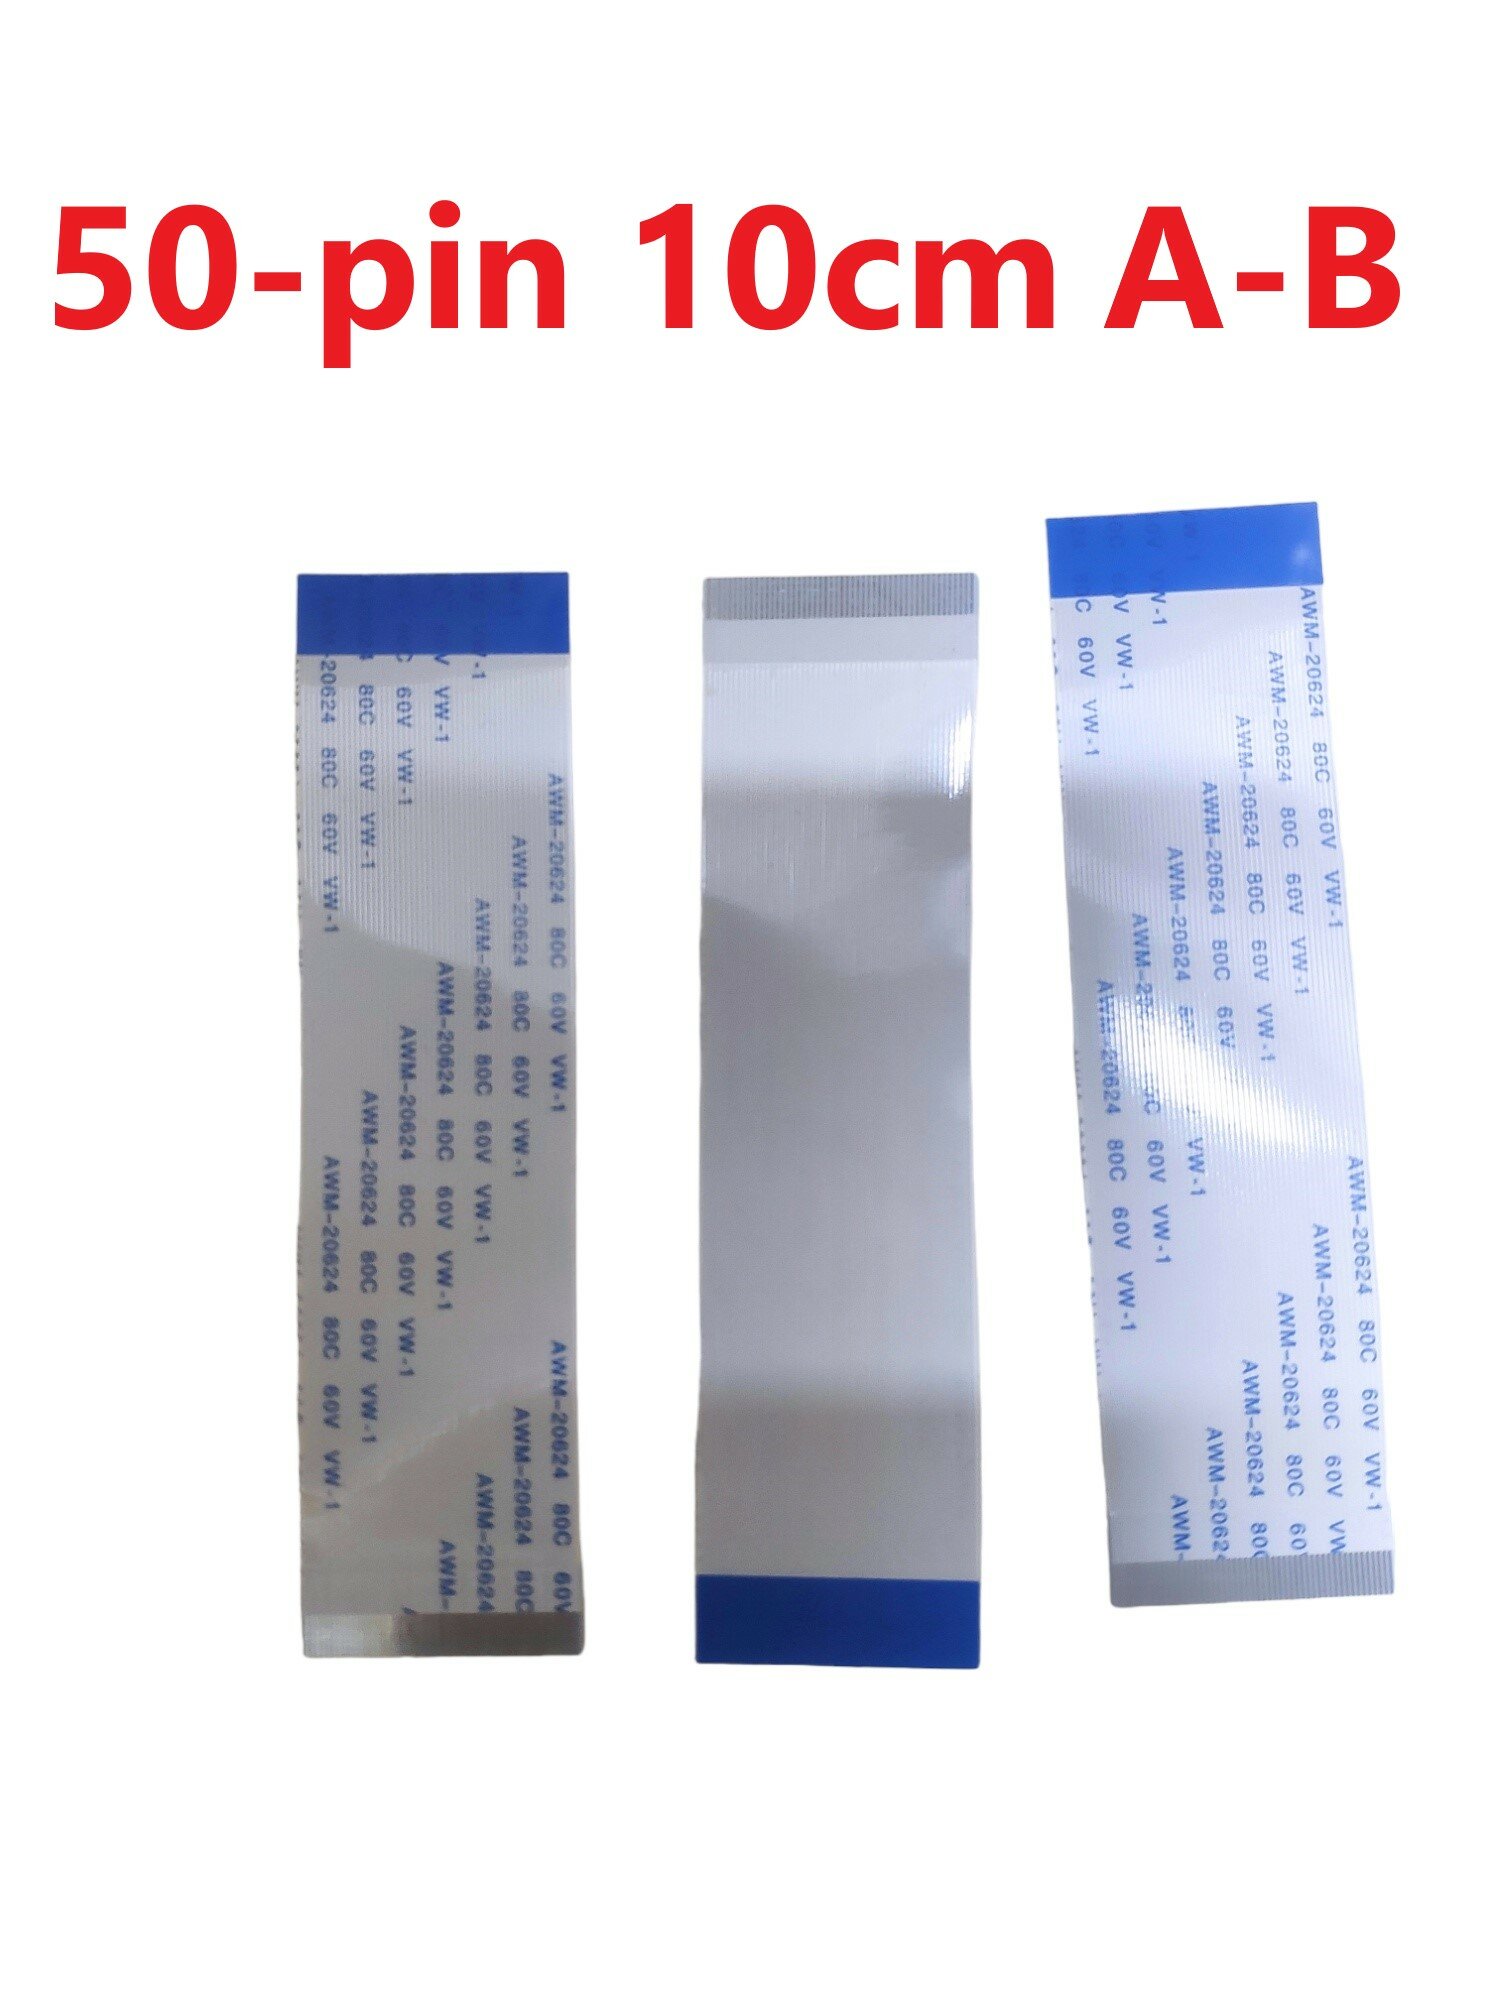 Шлейф ffc 50-pin шаг 0.5mm длина 10cm обратный A-B awm 20624 80c 60v vw-1